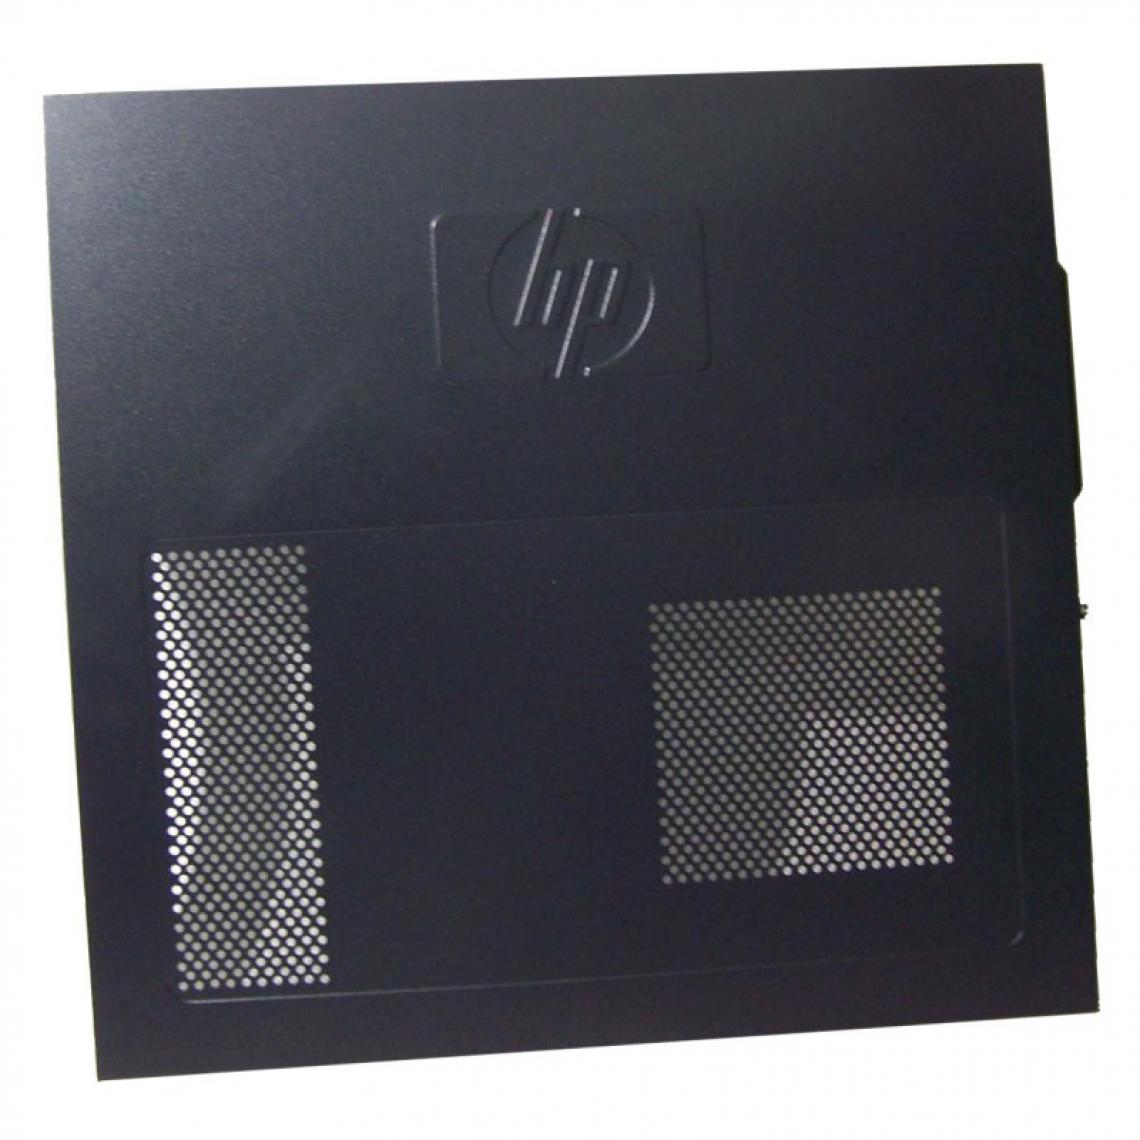 Hp - Capot PC HP Compaq DX7500 CMT 463513-001 5008-0665 Portière Boîtier Couvercle - Boitier PC